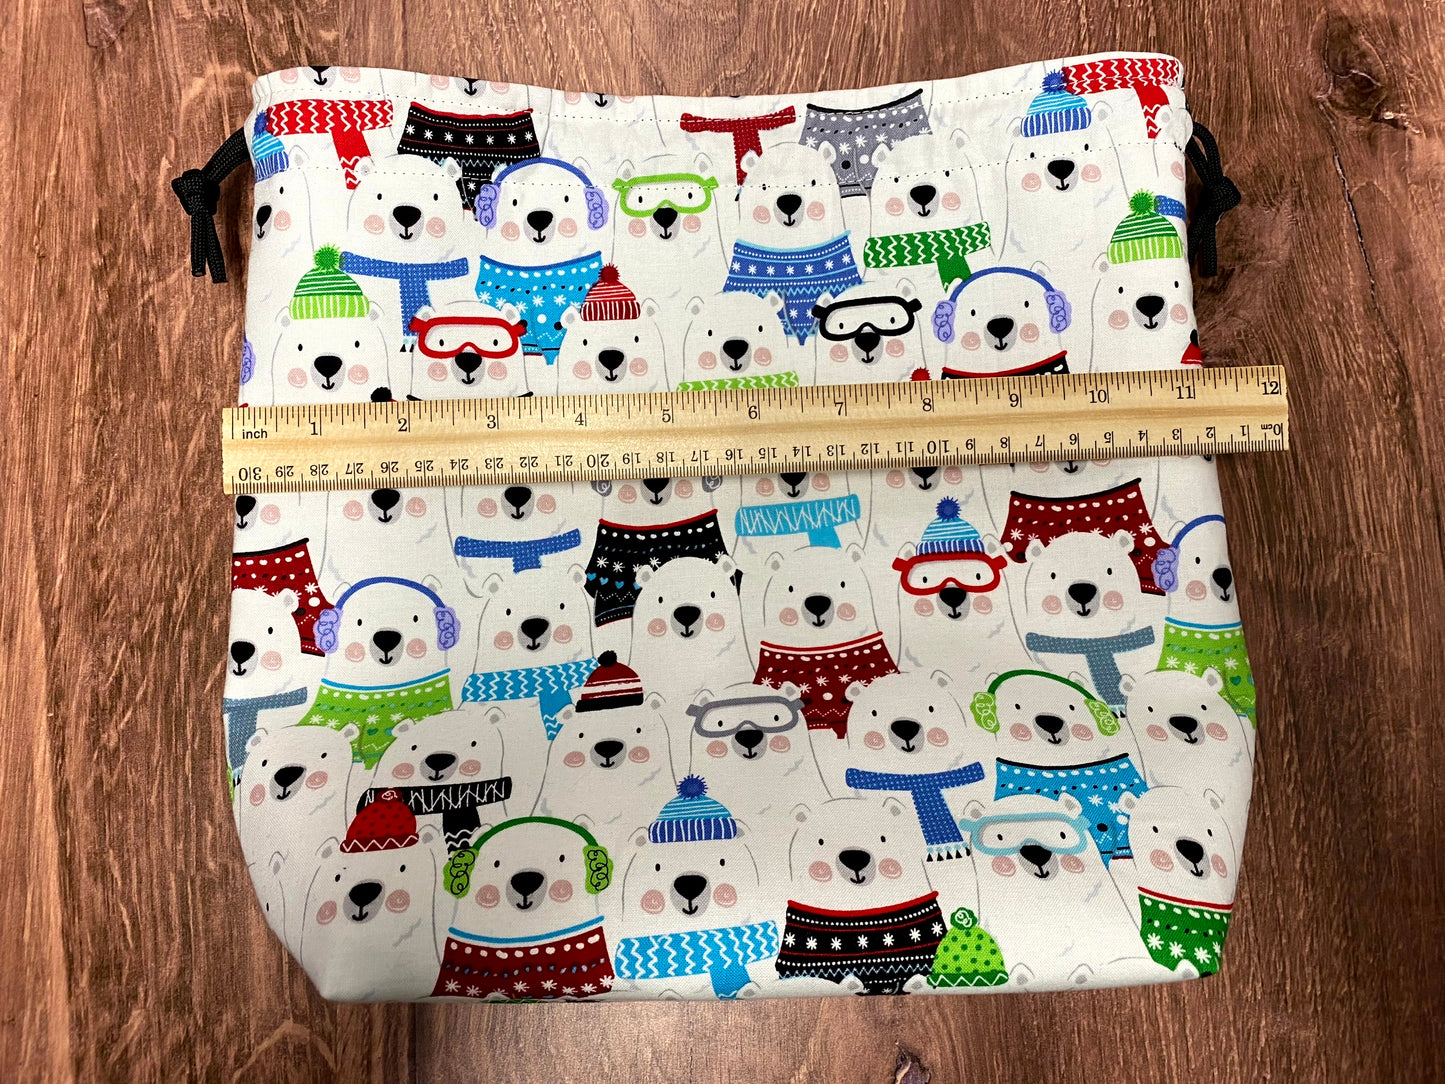 Polar Bear Project Bag - Drawstring Bag – Crochet Bag - Knitting Bag - Cross Stitch Bag - Christmas - Holiday - Bears